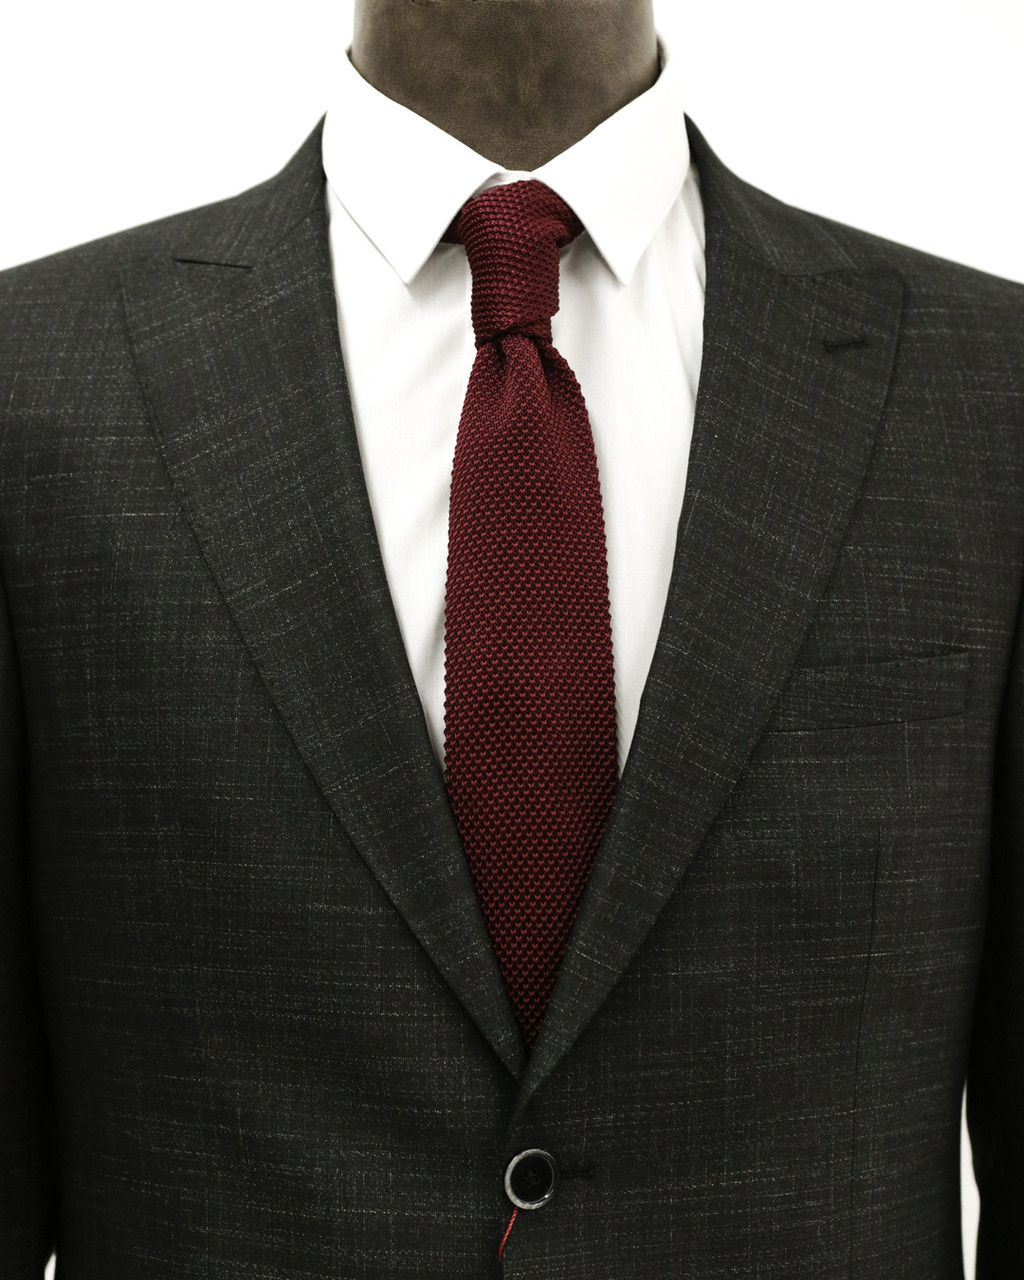 Мужской галстук «UM&H jrs20» бордовый (полиэстер), фото 1